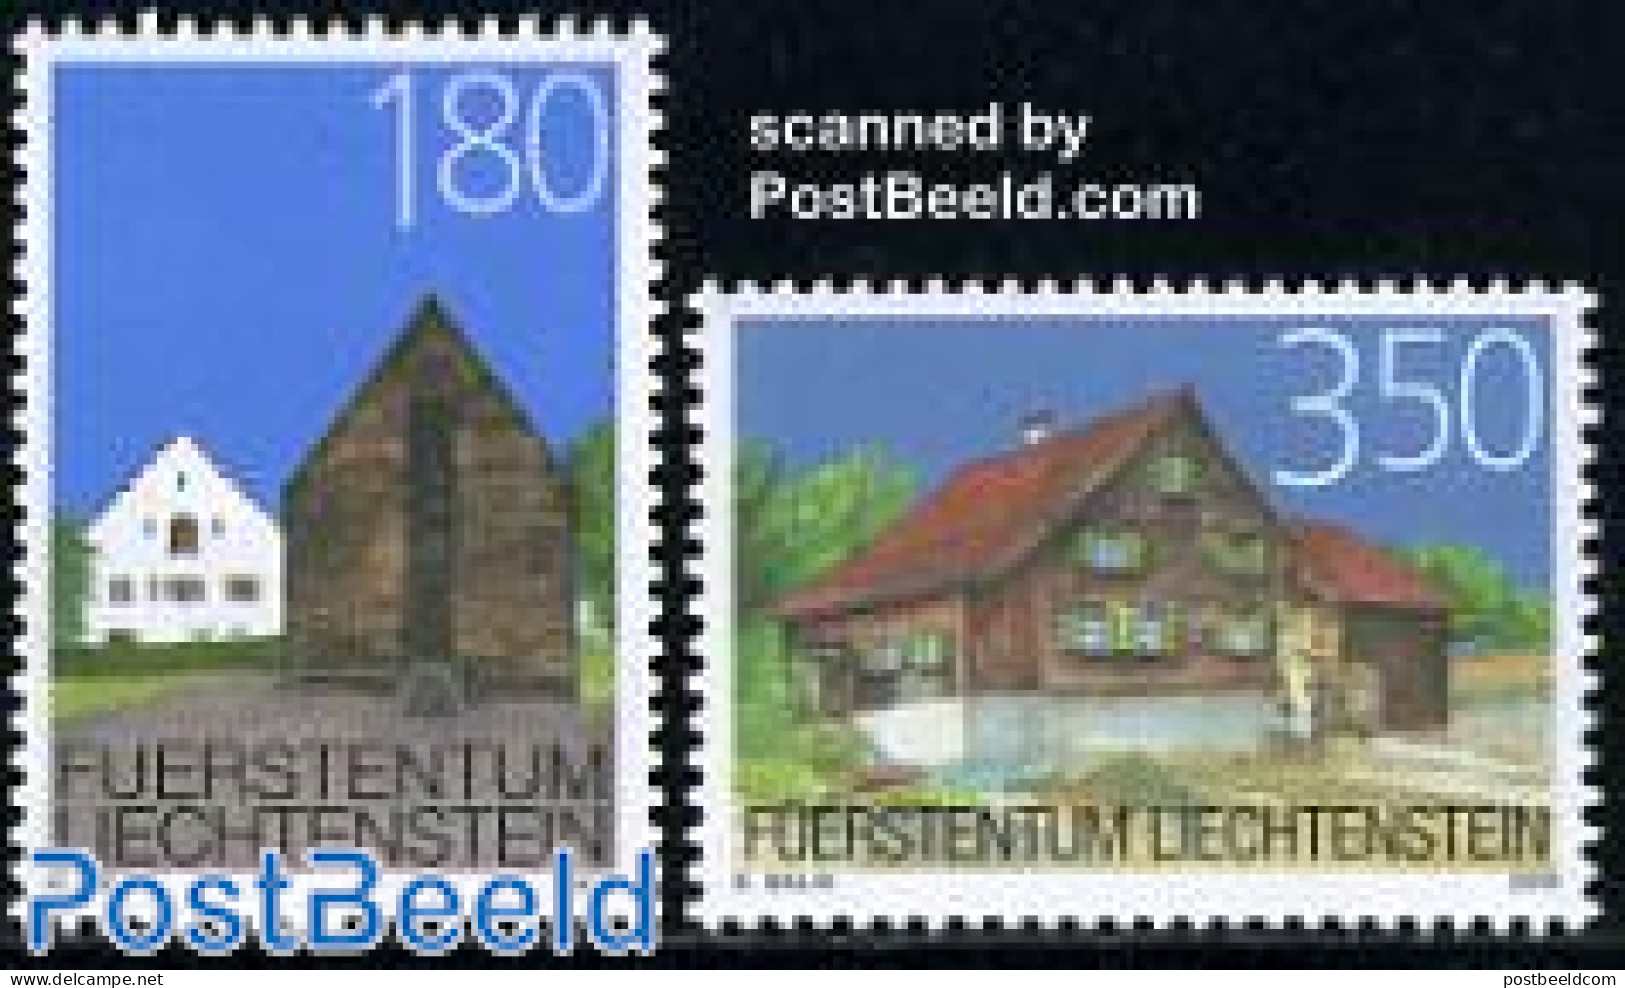 Liechtenstein 2006 Definitives, Architecture 2v, Mint NH, Art - Architecture - Unused Stamps